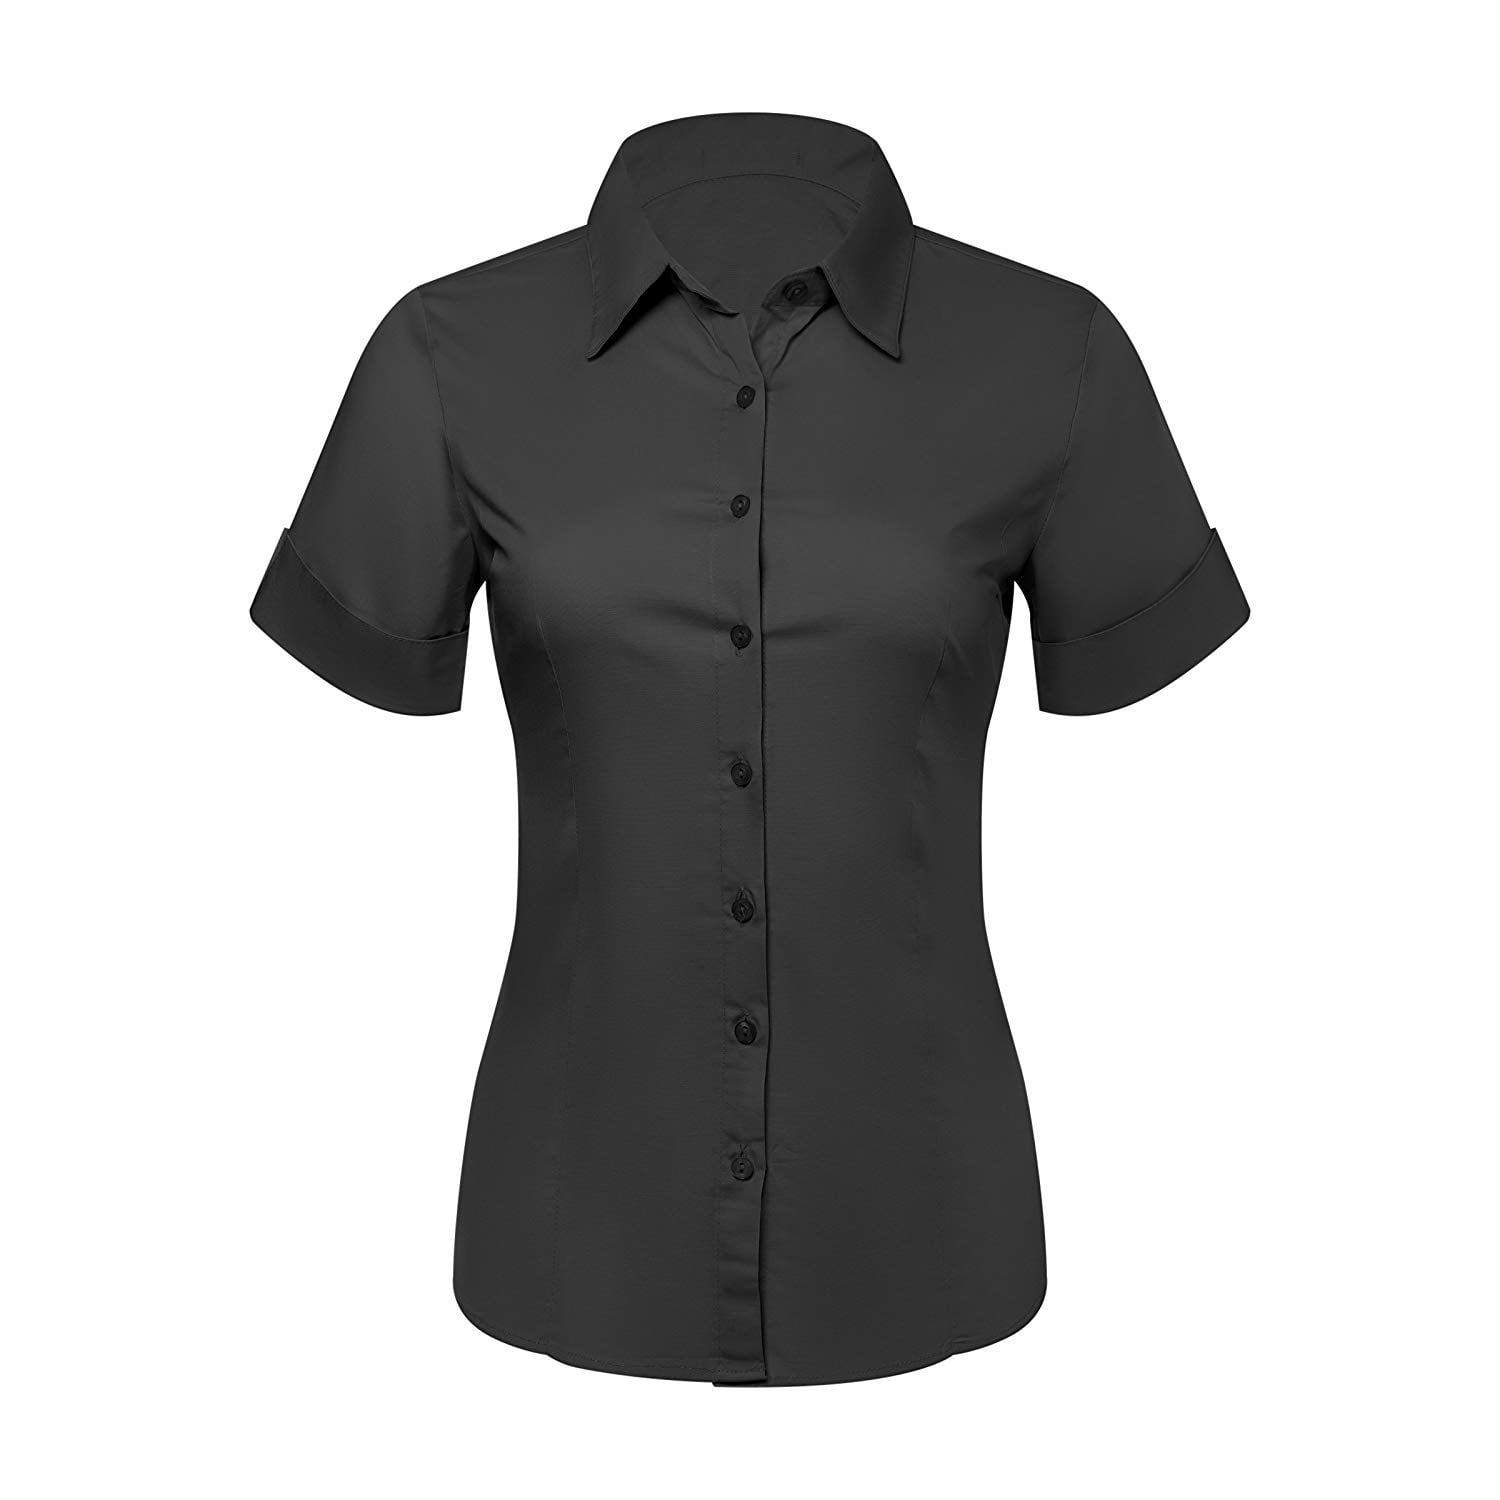 black dress shirt women